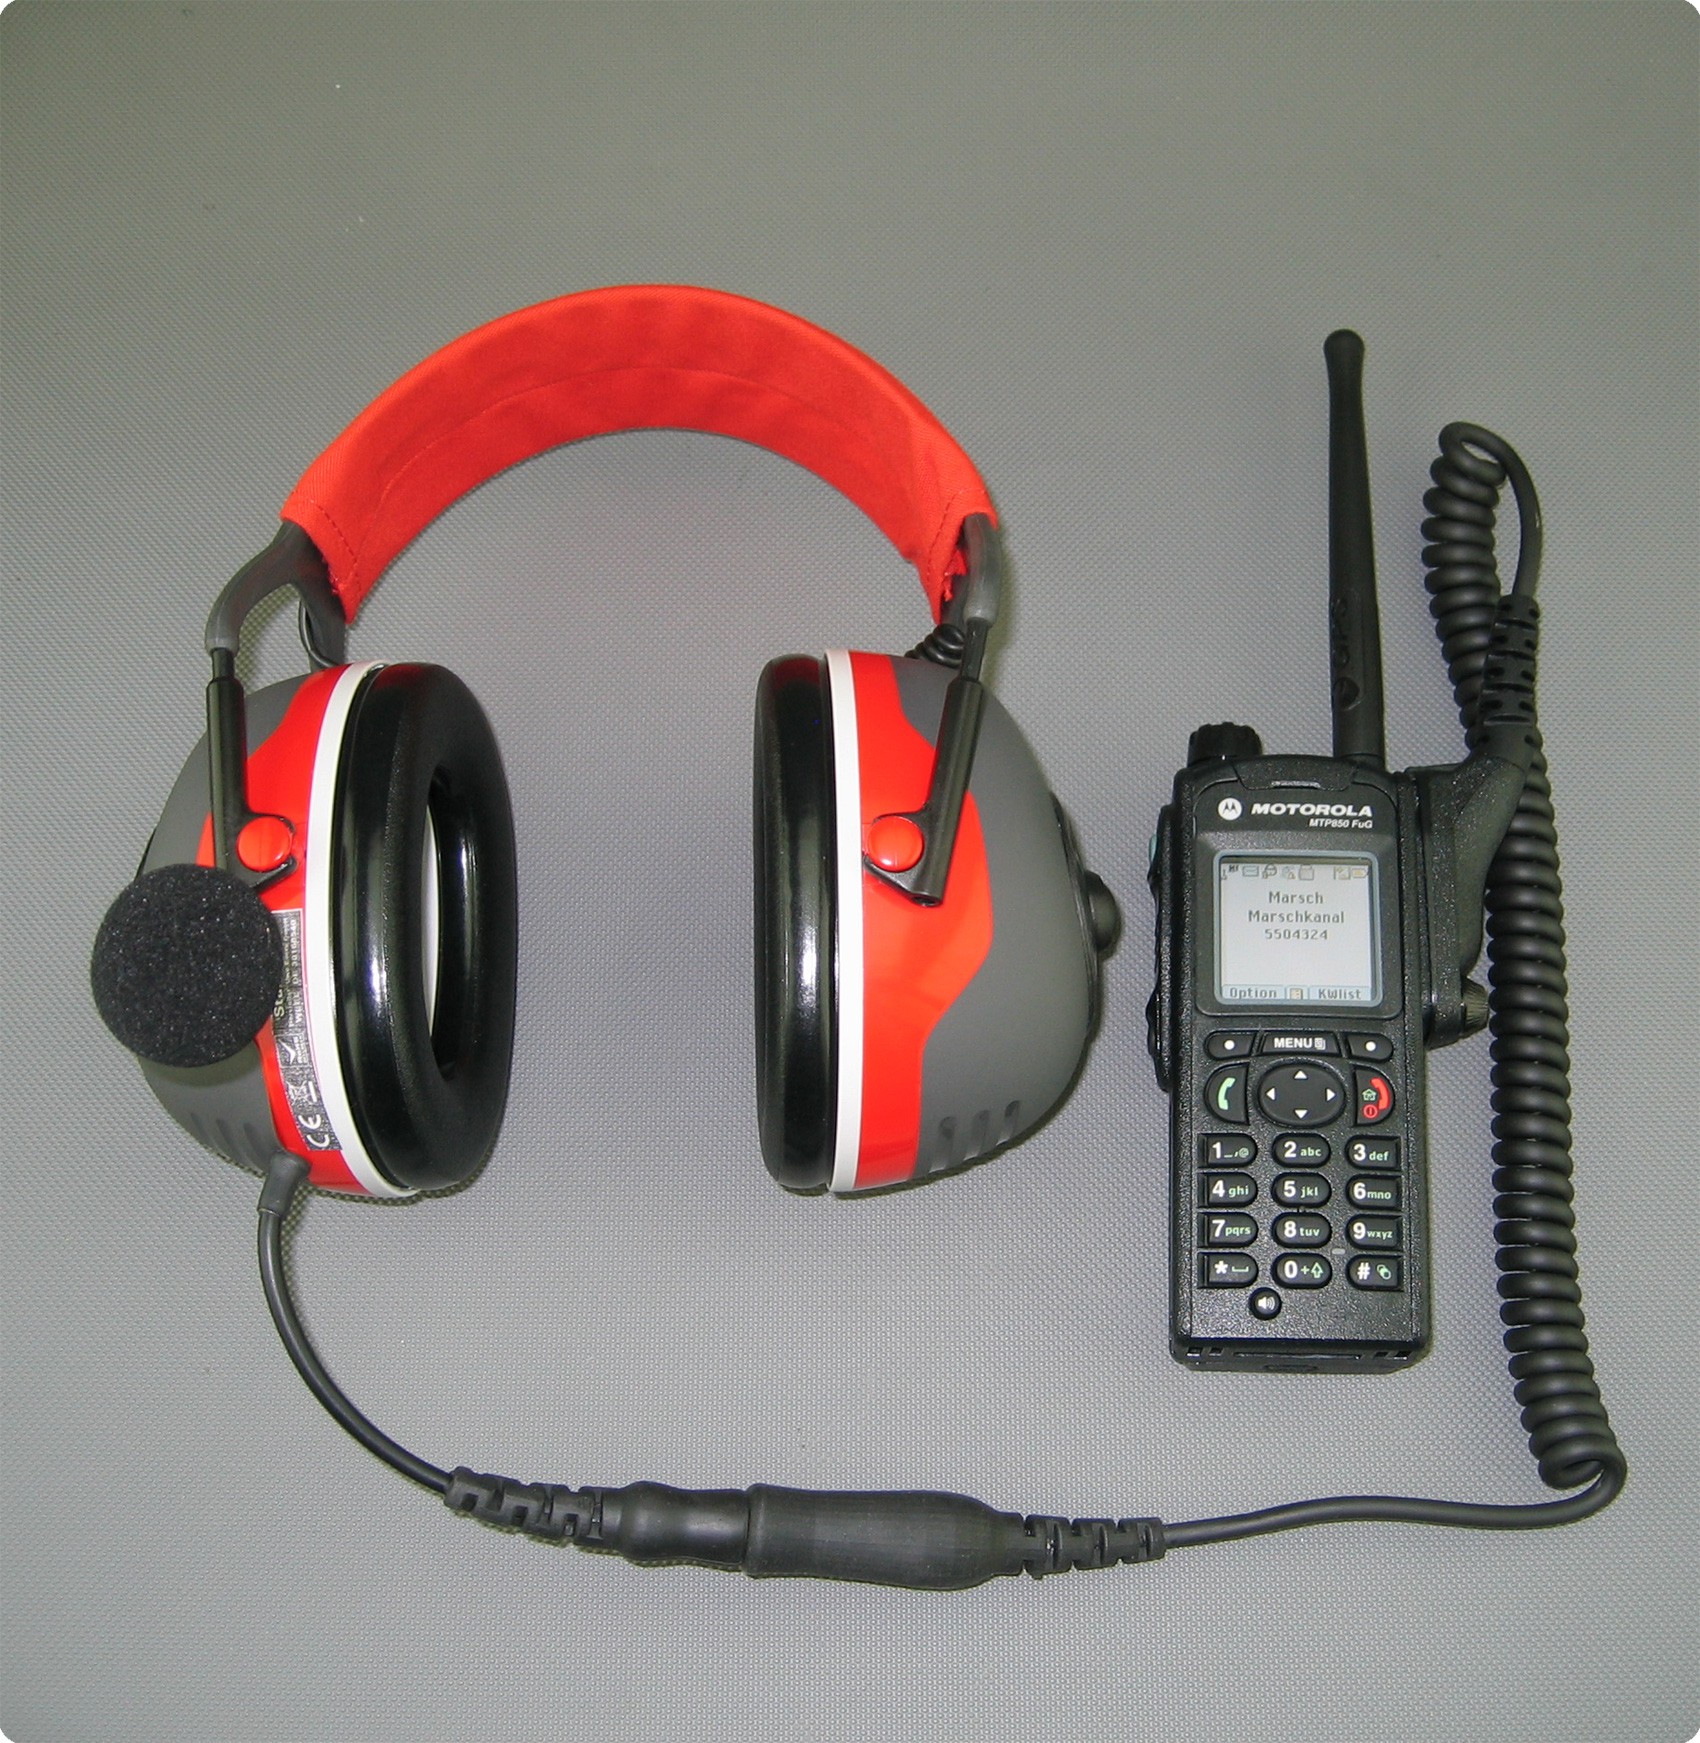 Auriculares para Motorola radio MTP850 con enchufe Peltor, Nexus, Amphenol